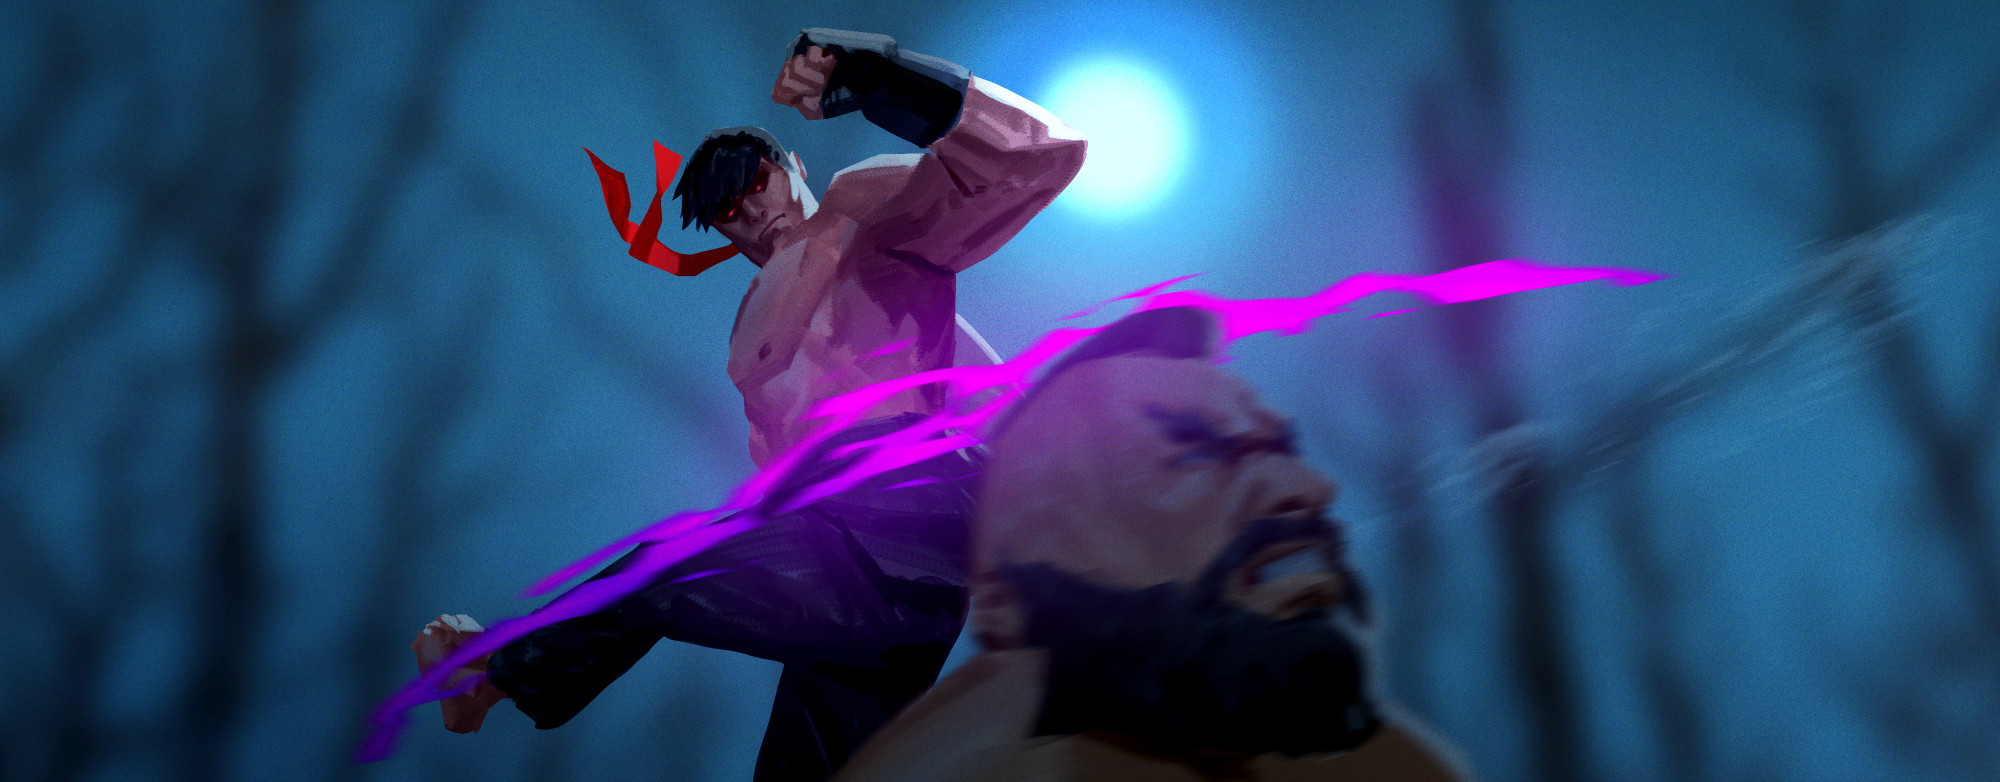 Evil Ryu vs Zangief 